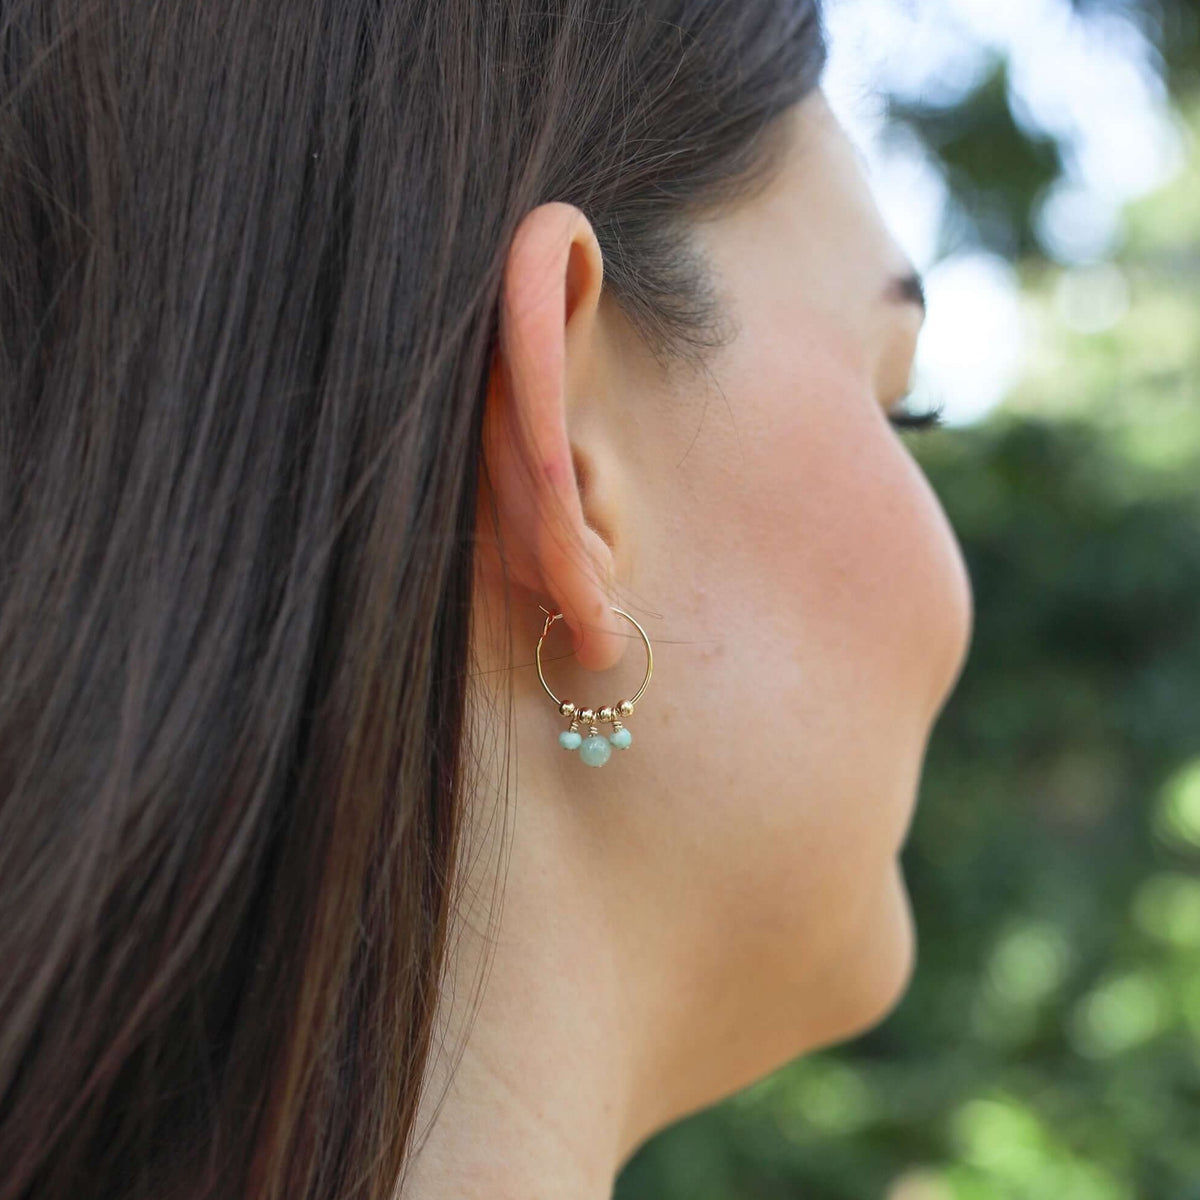 Hoop Earrings - Amazonite - 14K Gold Fill - Luna Tide Handmade Jewellery